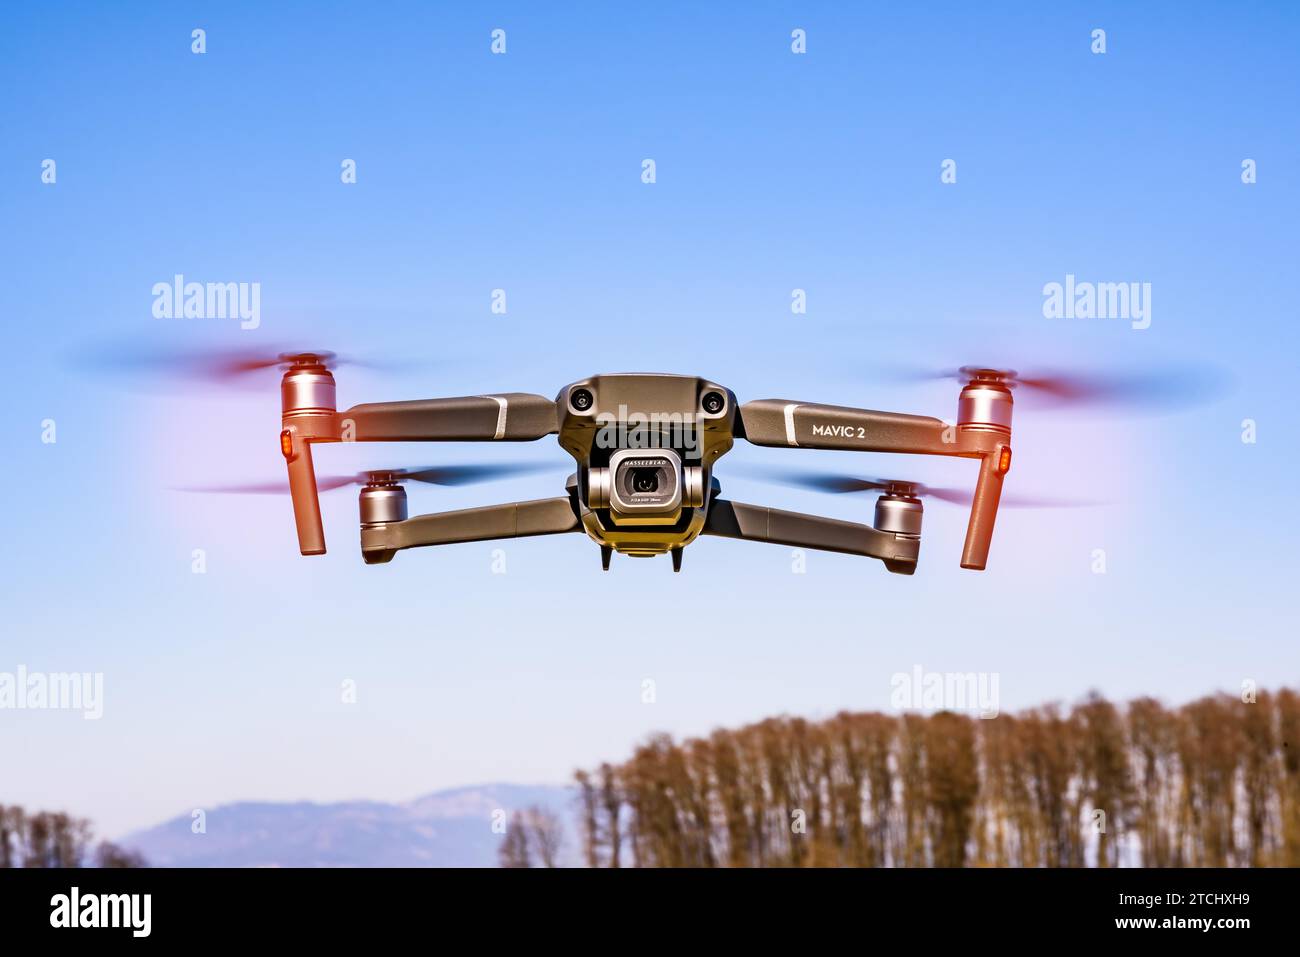 Graz, Autriche 15.03.2020, DJI Drone Mavic 2 Pro avec caméra Hasselblad volant en zone rurale. Espace de copie Banque D'Images